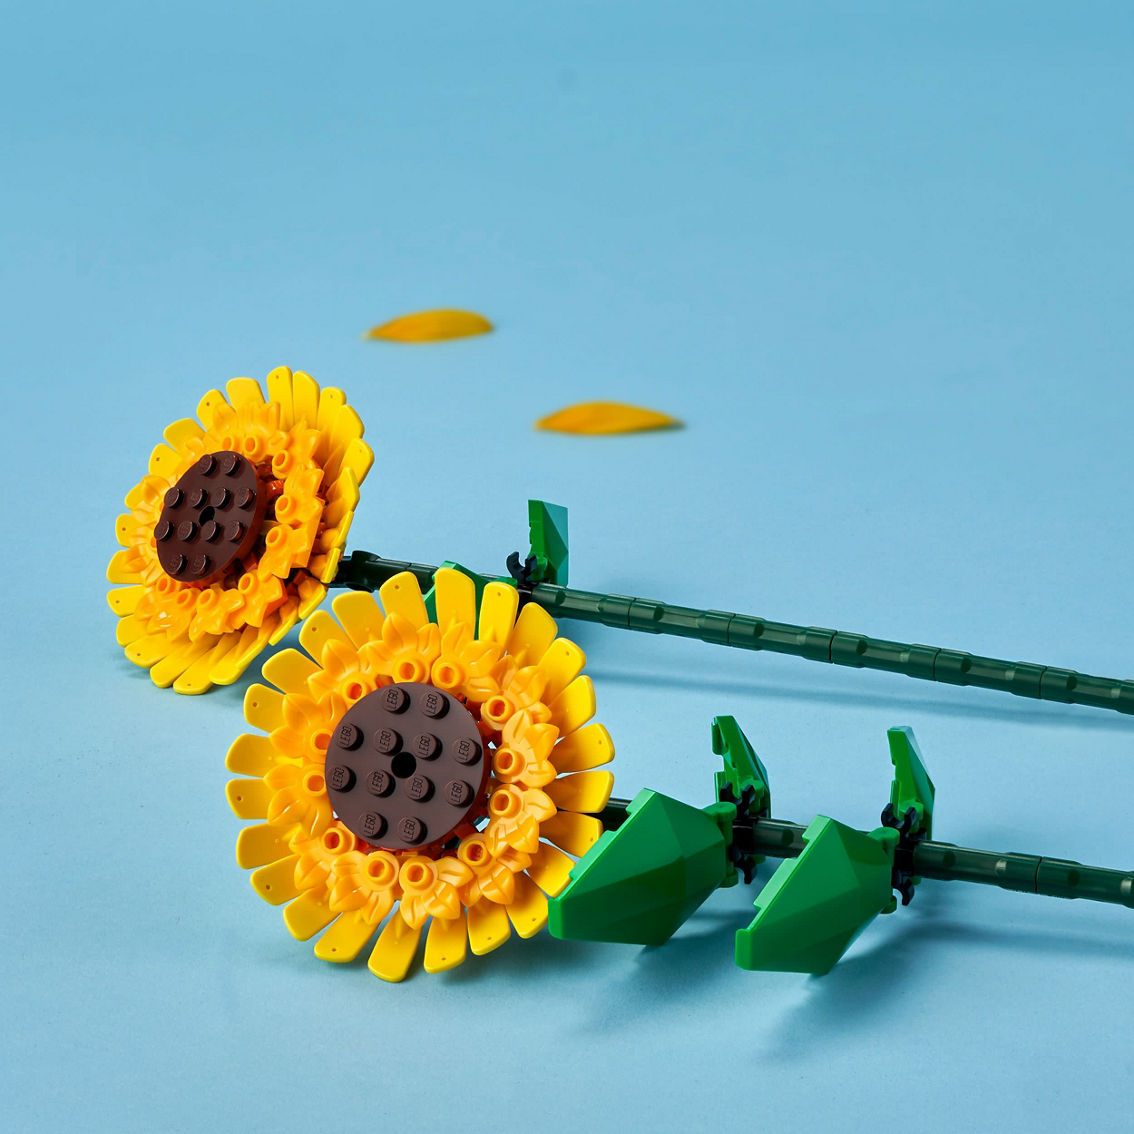 LEGO LEL Flowers Sunflowers 40524 - Image 4 of 7